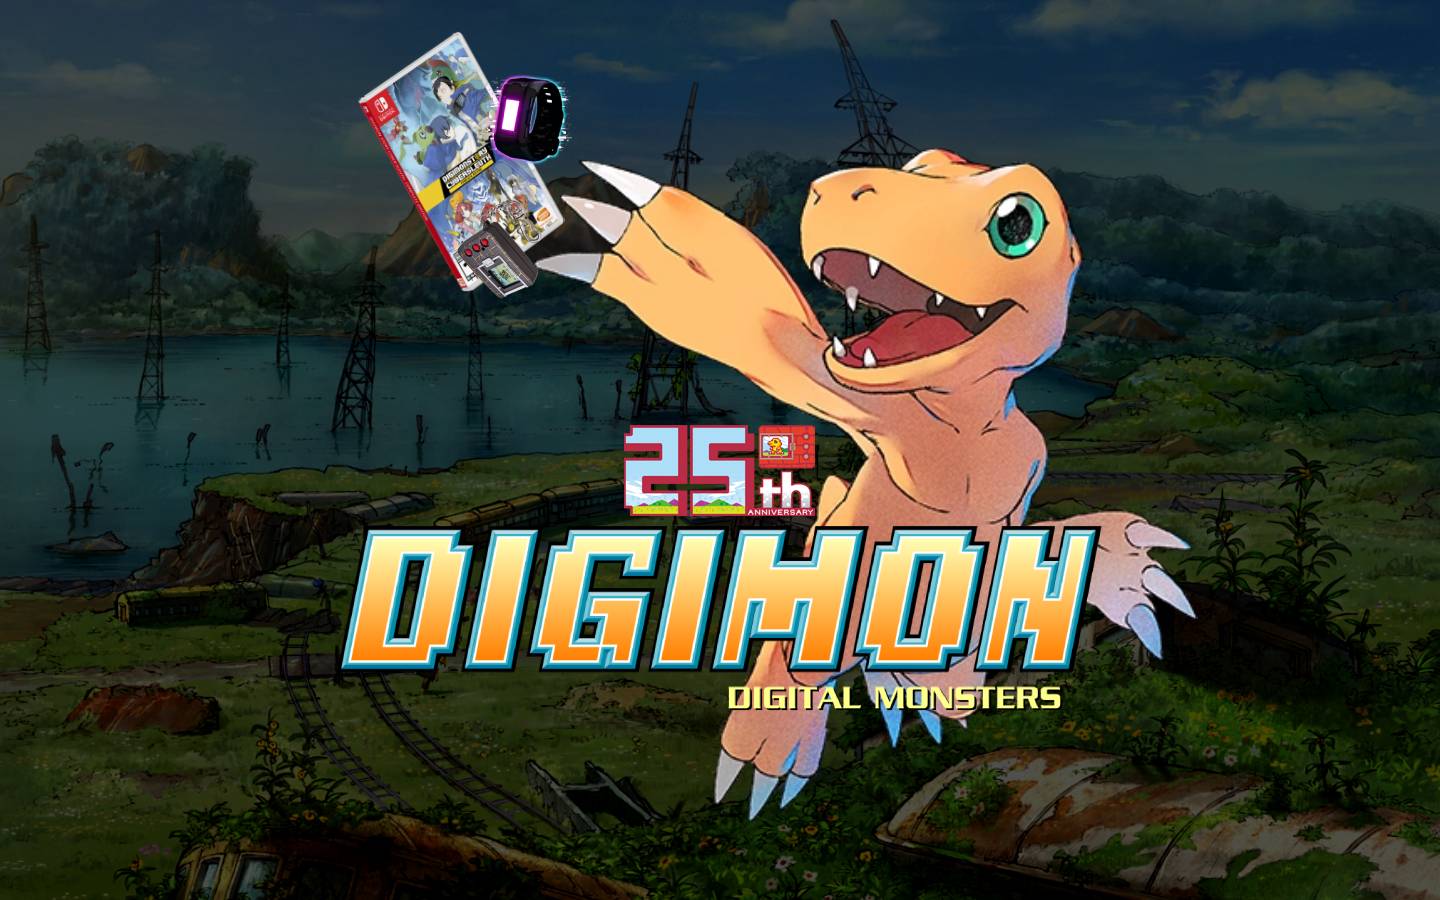 Personagens clássicos de Digimon serão adultos em novo filme